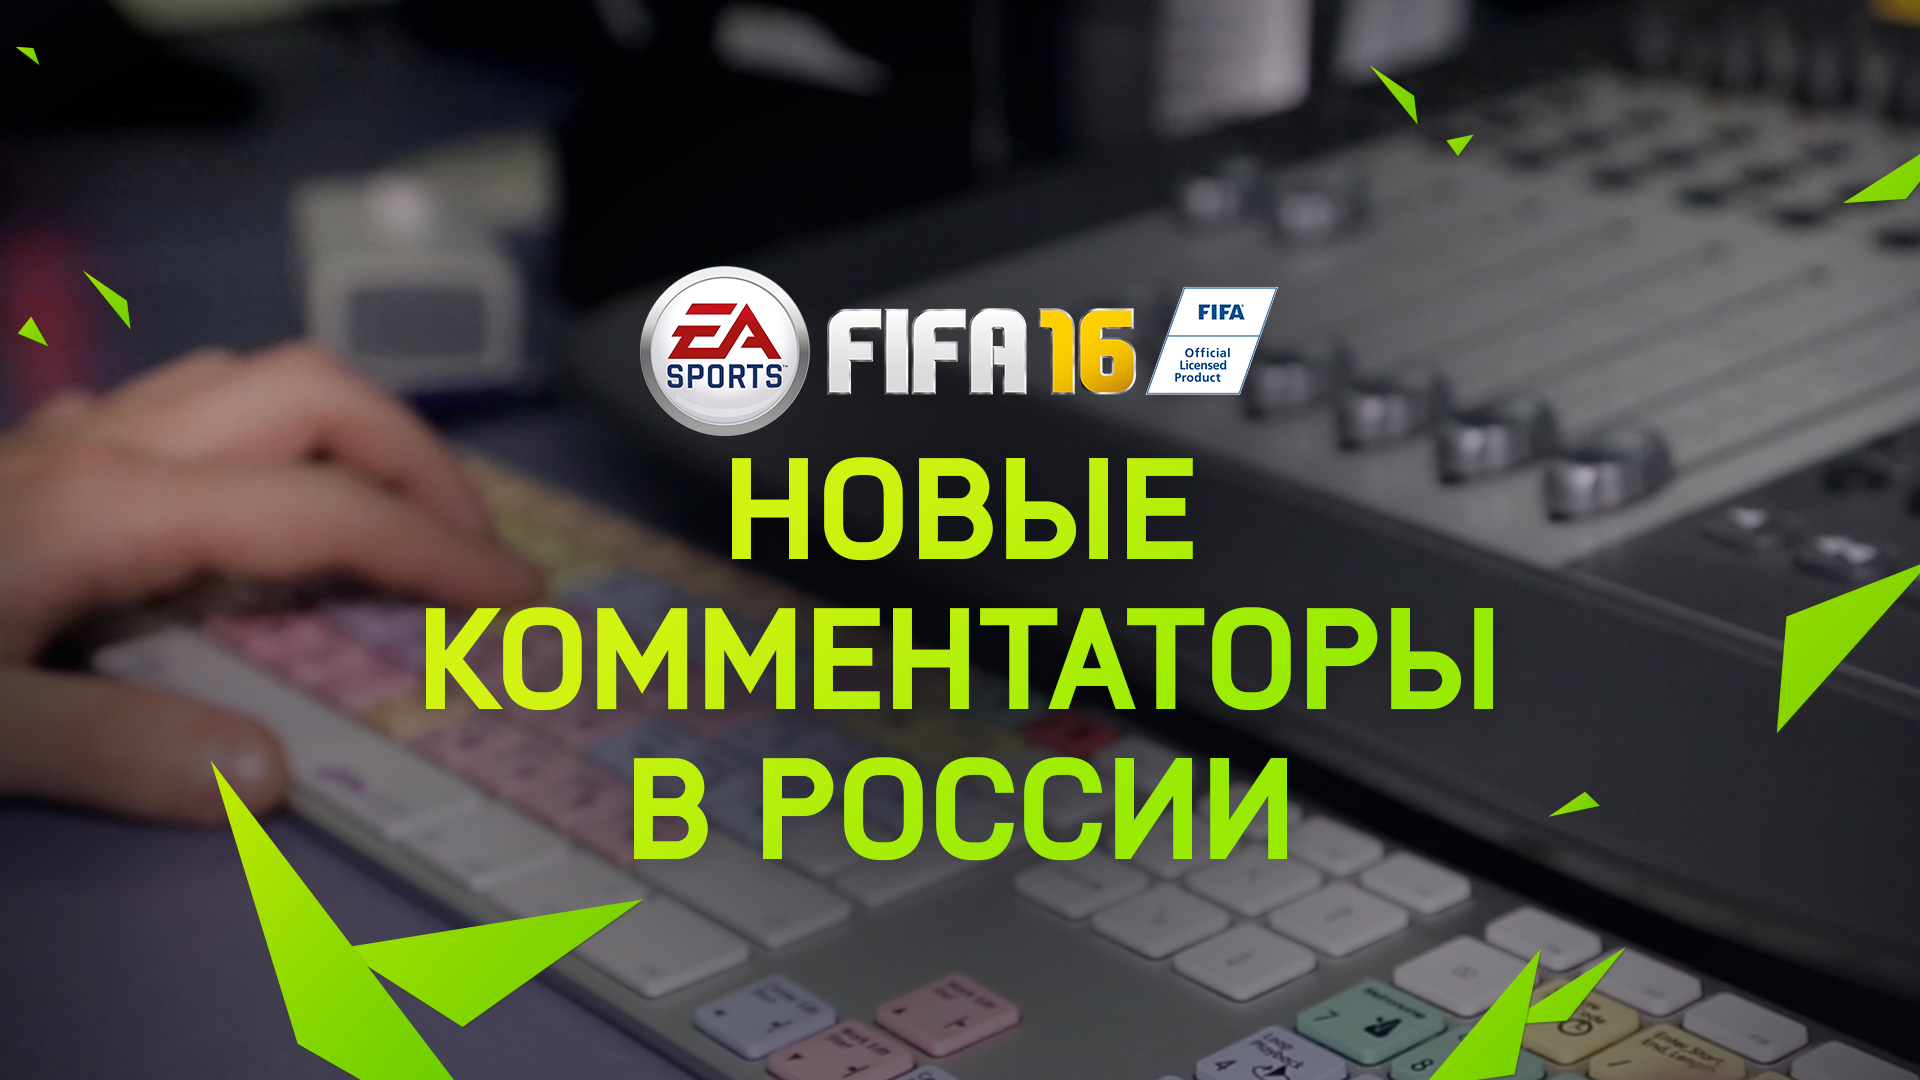 Георгий Черданцев и Константин Генич станут комментаторами FIFA 16 в России